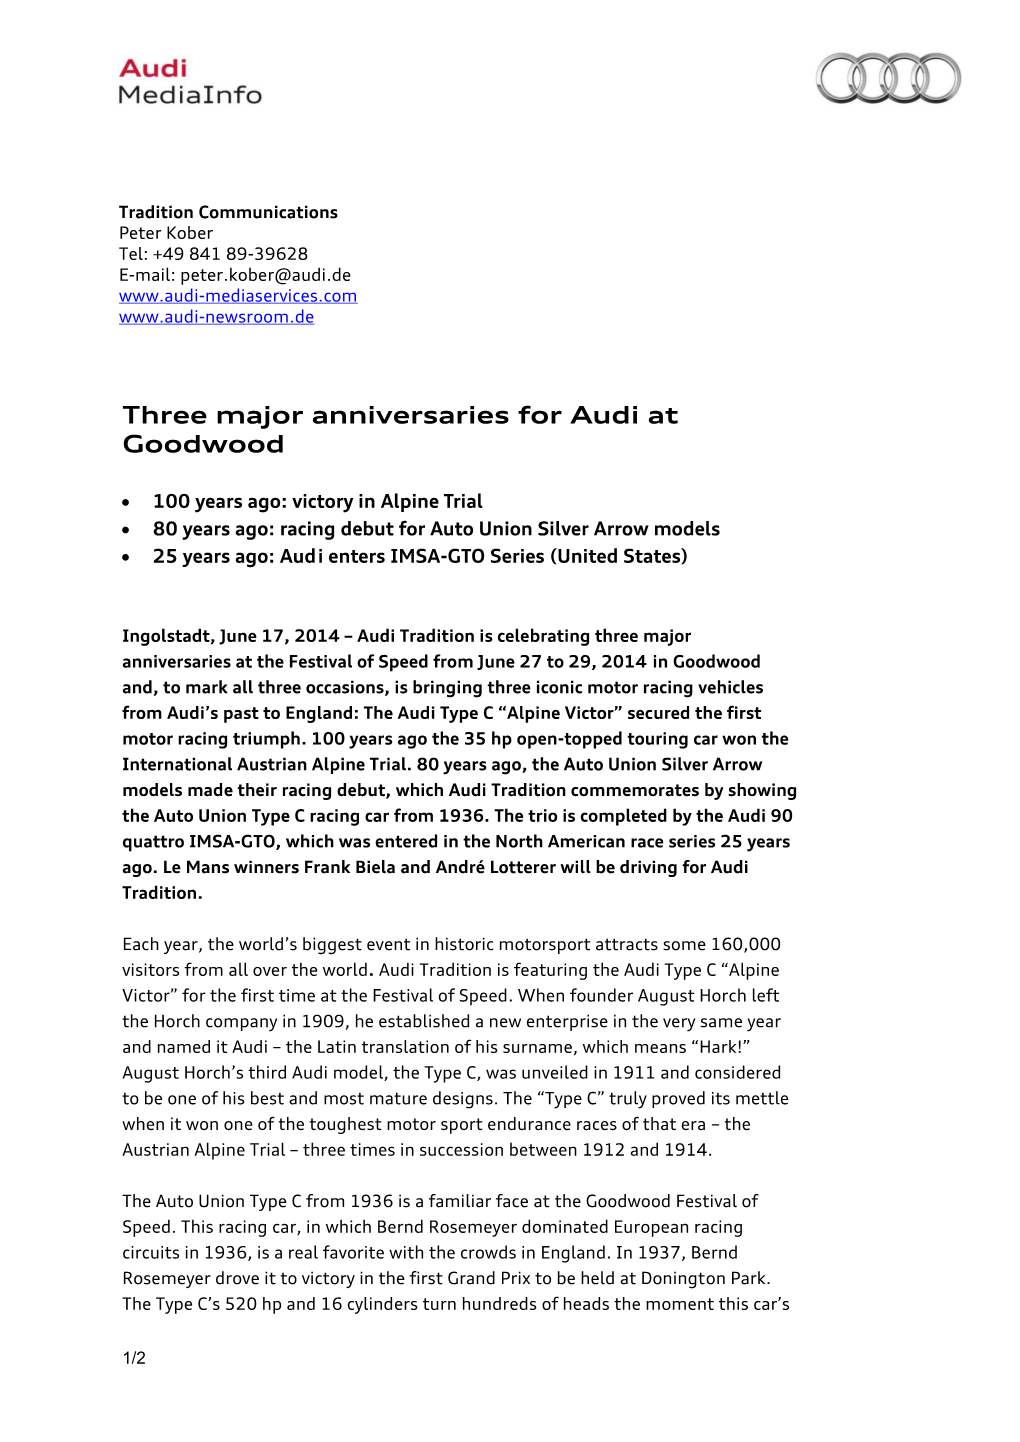 Three Major Anniversaries for Audi at Goodwood